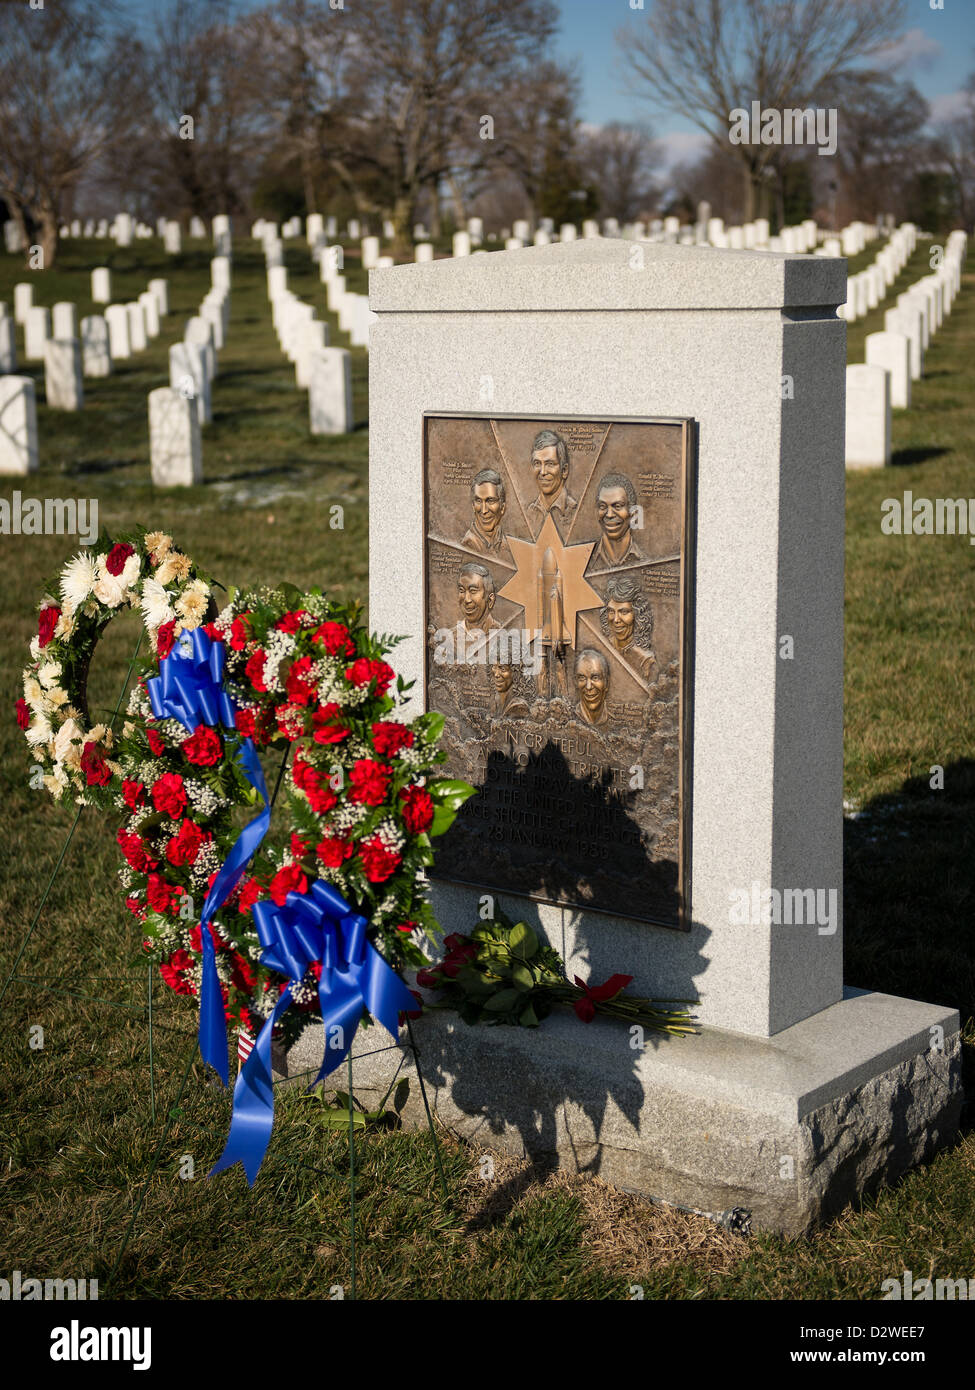 Mémorial de la navette spatiale Challenger avec une couronne commémorative dans le cadre de la Journée du souvenir de la NASA le 1 février 2013 au cimetière national d'Arlington, Arlington, VA. Les couronnes ont été déposées à la mémoire de ces hommes et femmes qui ont perdu leur vie dans la quête de l'exploration spatiale. Banque D'Images